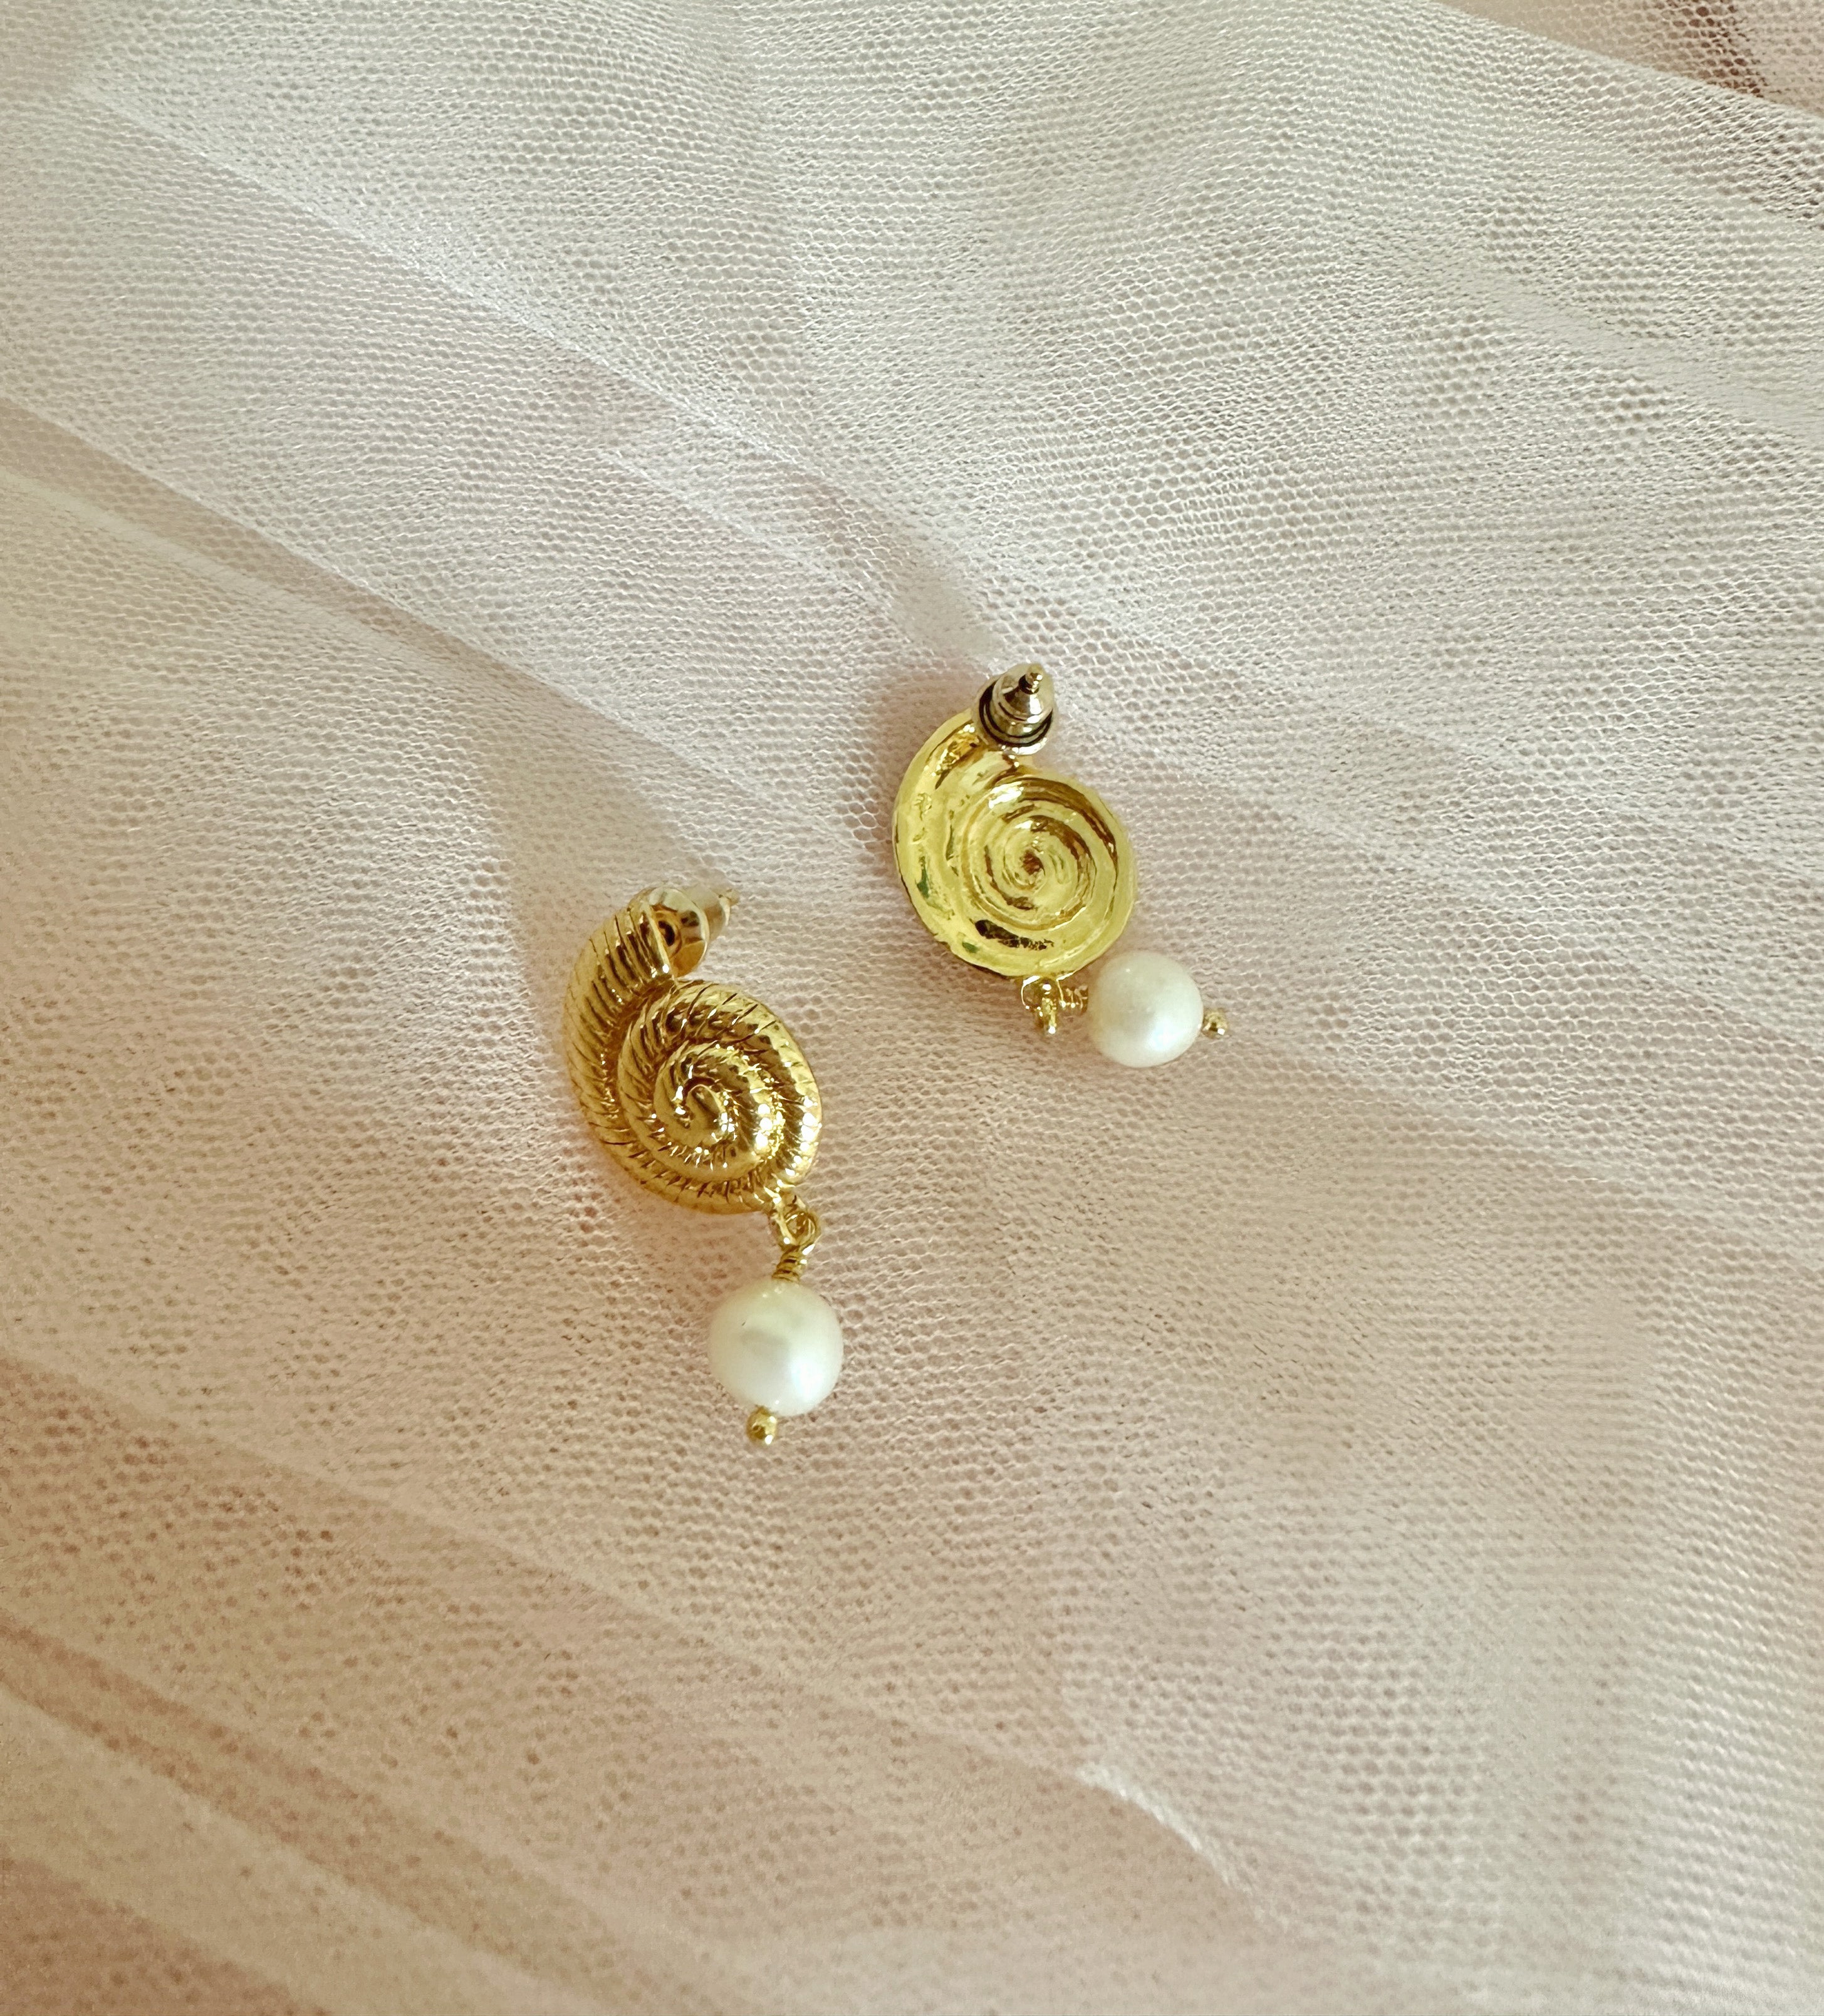 The “Vanessa” Seashell Earrings